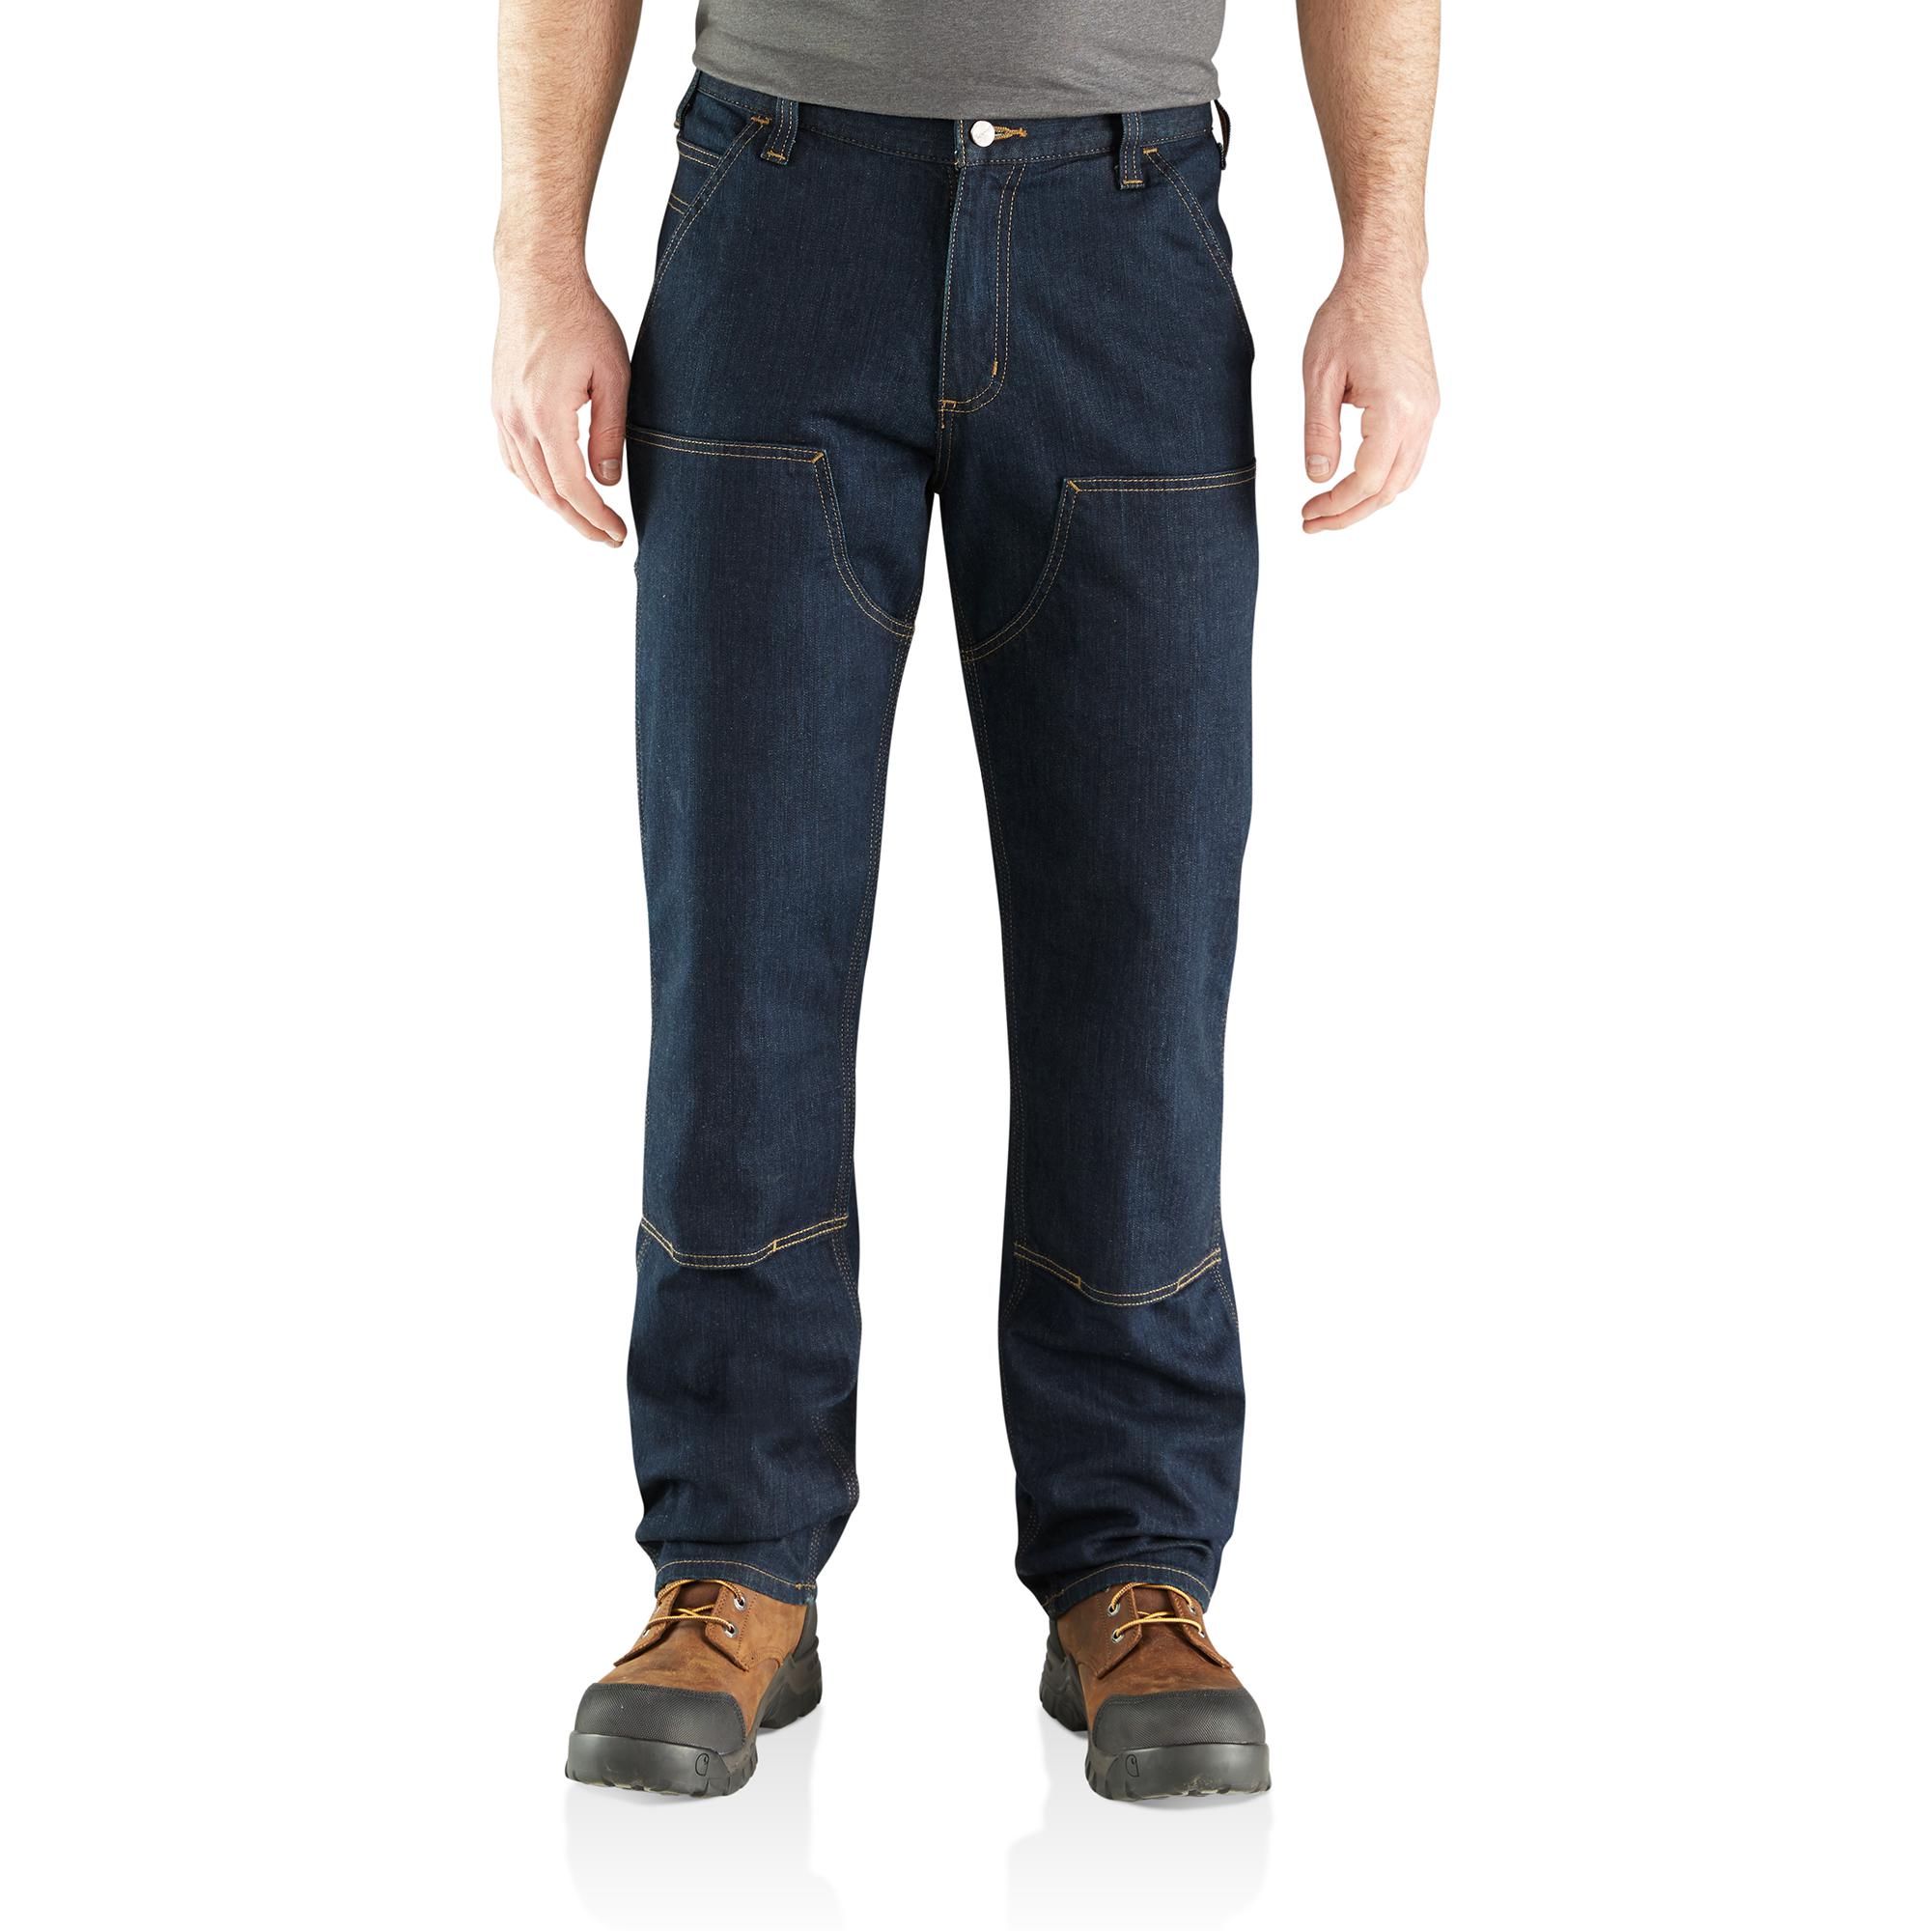 Carhartt Men's Double Front Jean